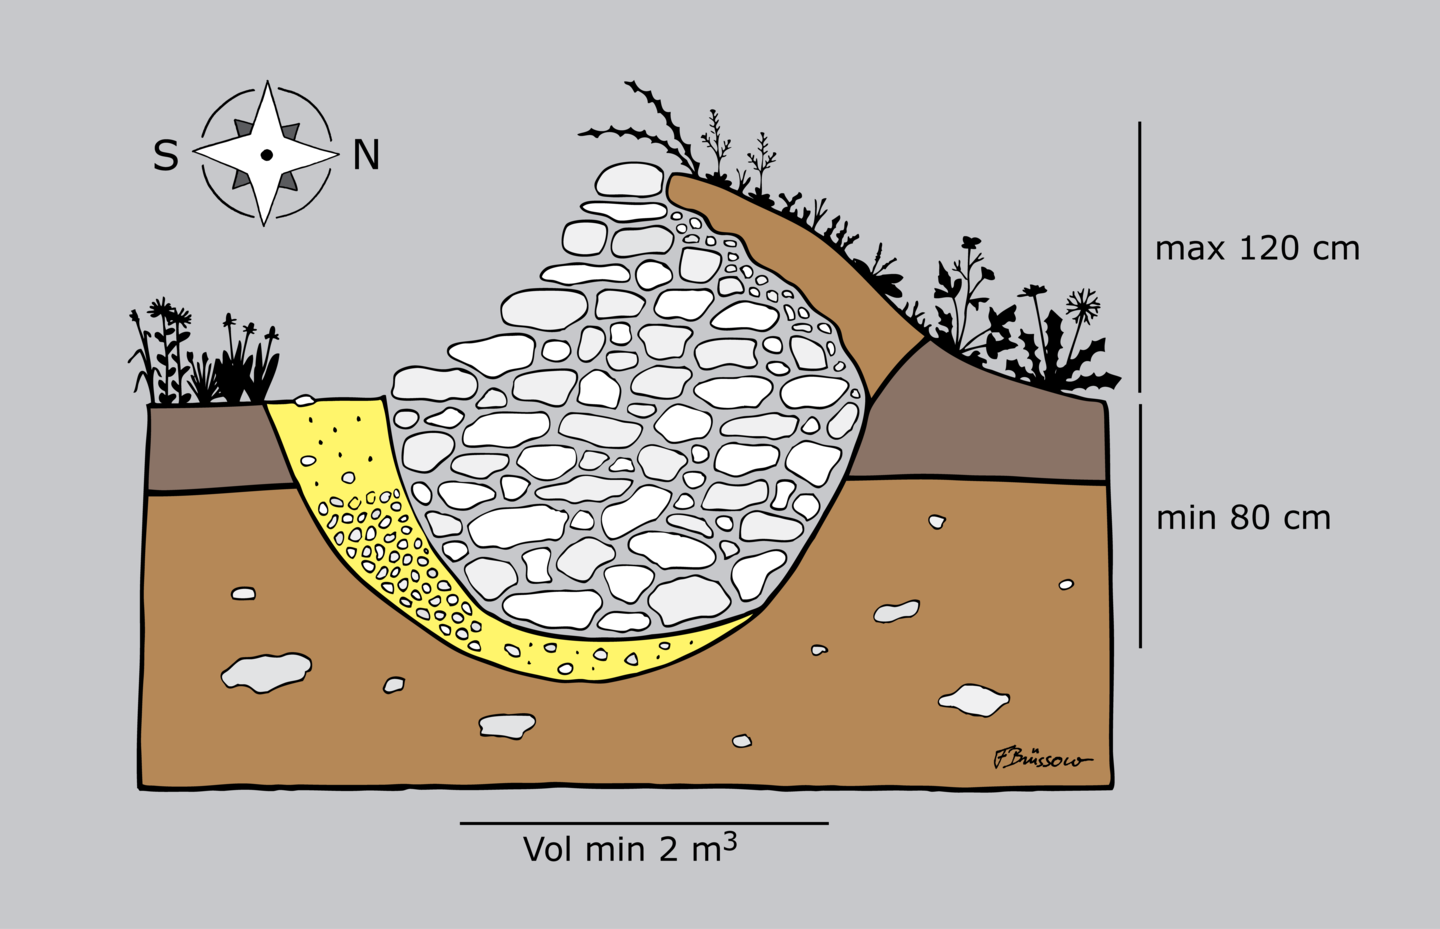 Grafik eines optimalen Steinwalls für Reptilien